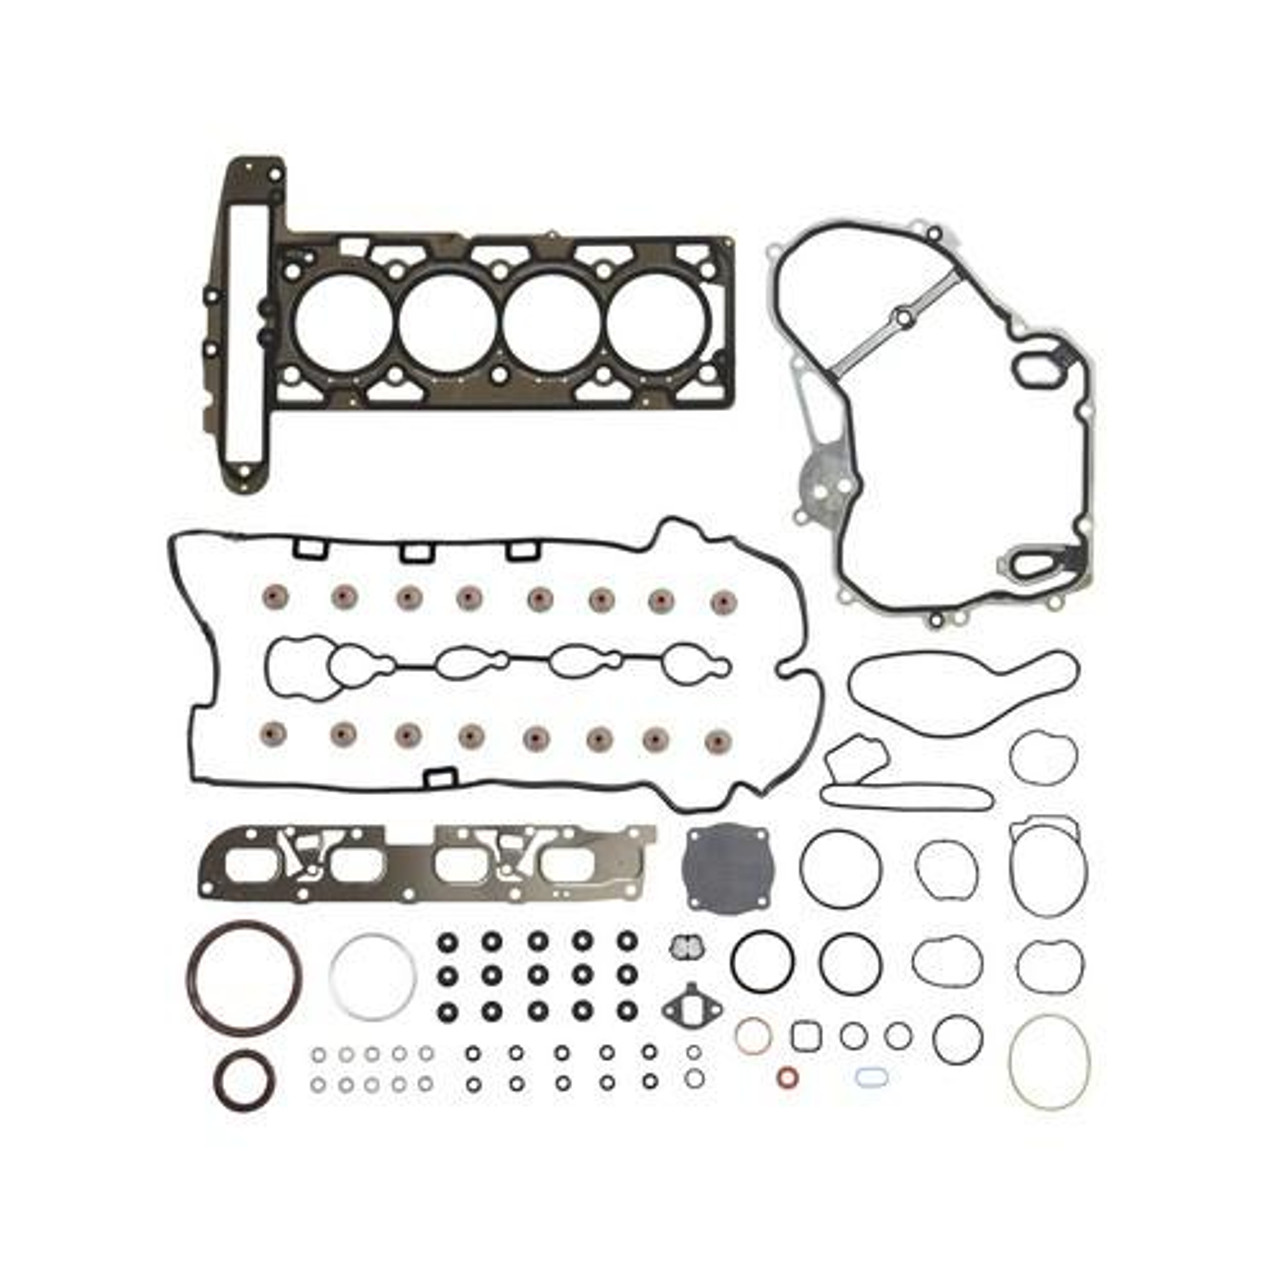 Full Gasket Set - 2012 Buick LaCrosse 2.4L Engine Parts # FGS4233ZE3